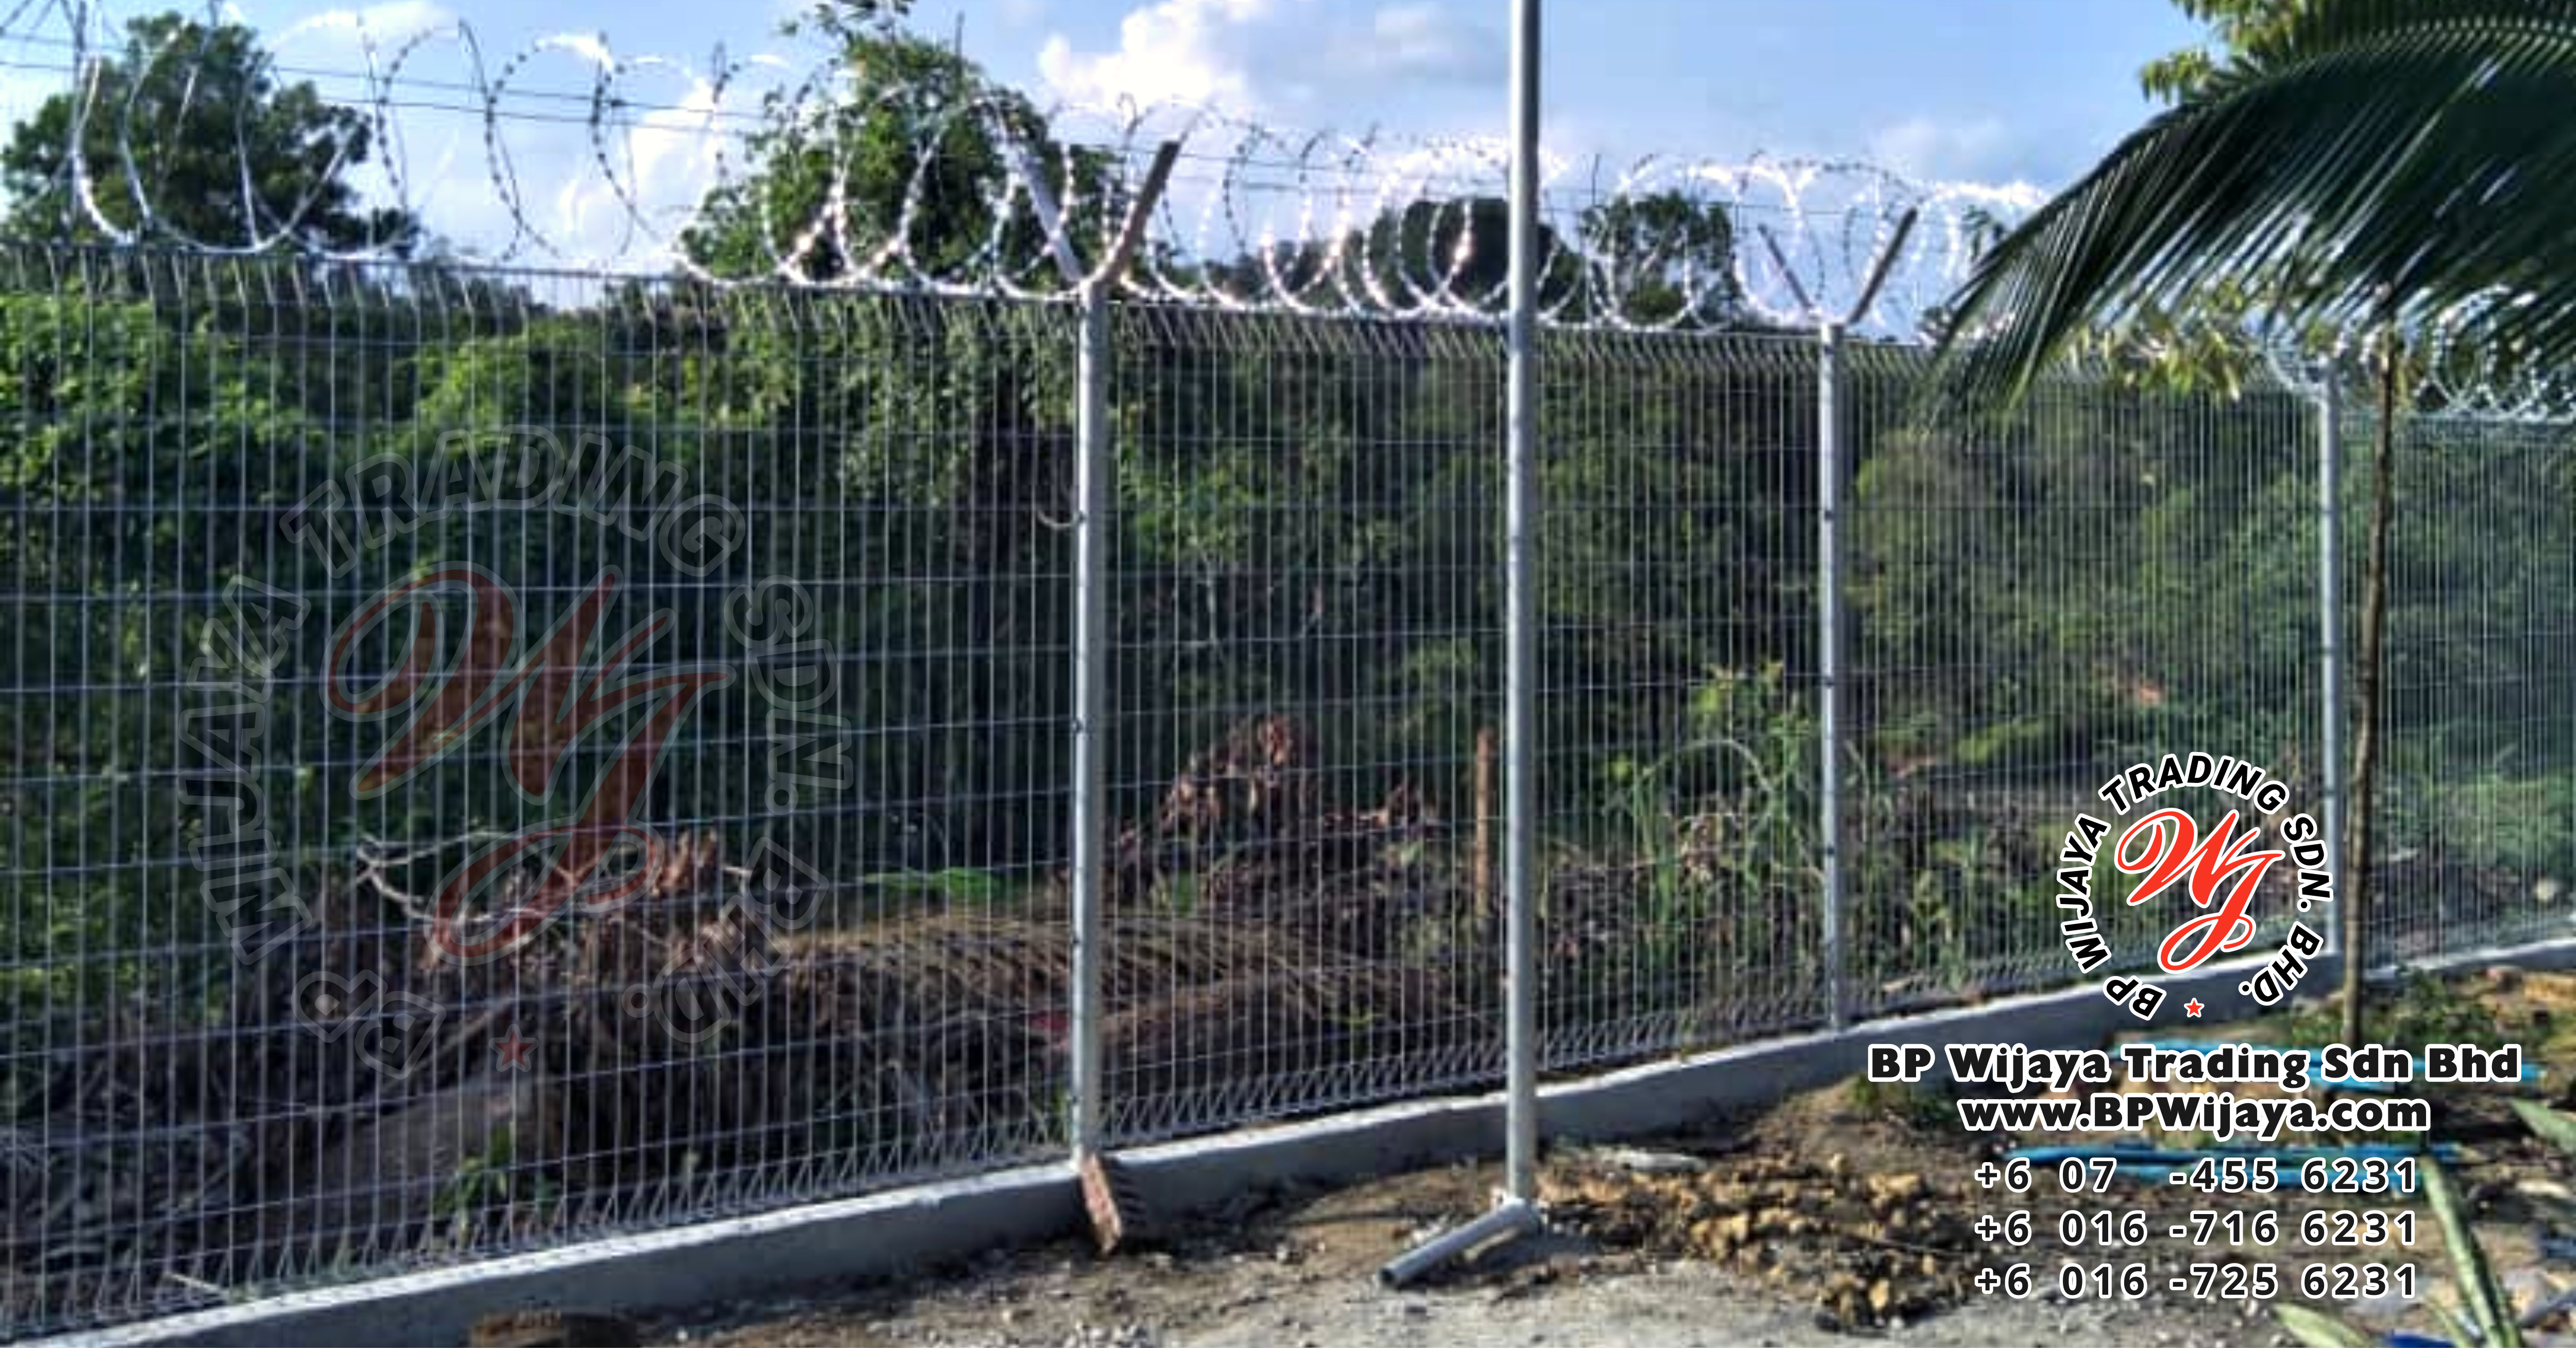 Project Security Fence at Ulu Tiram, Johor, Malaysia.